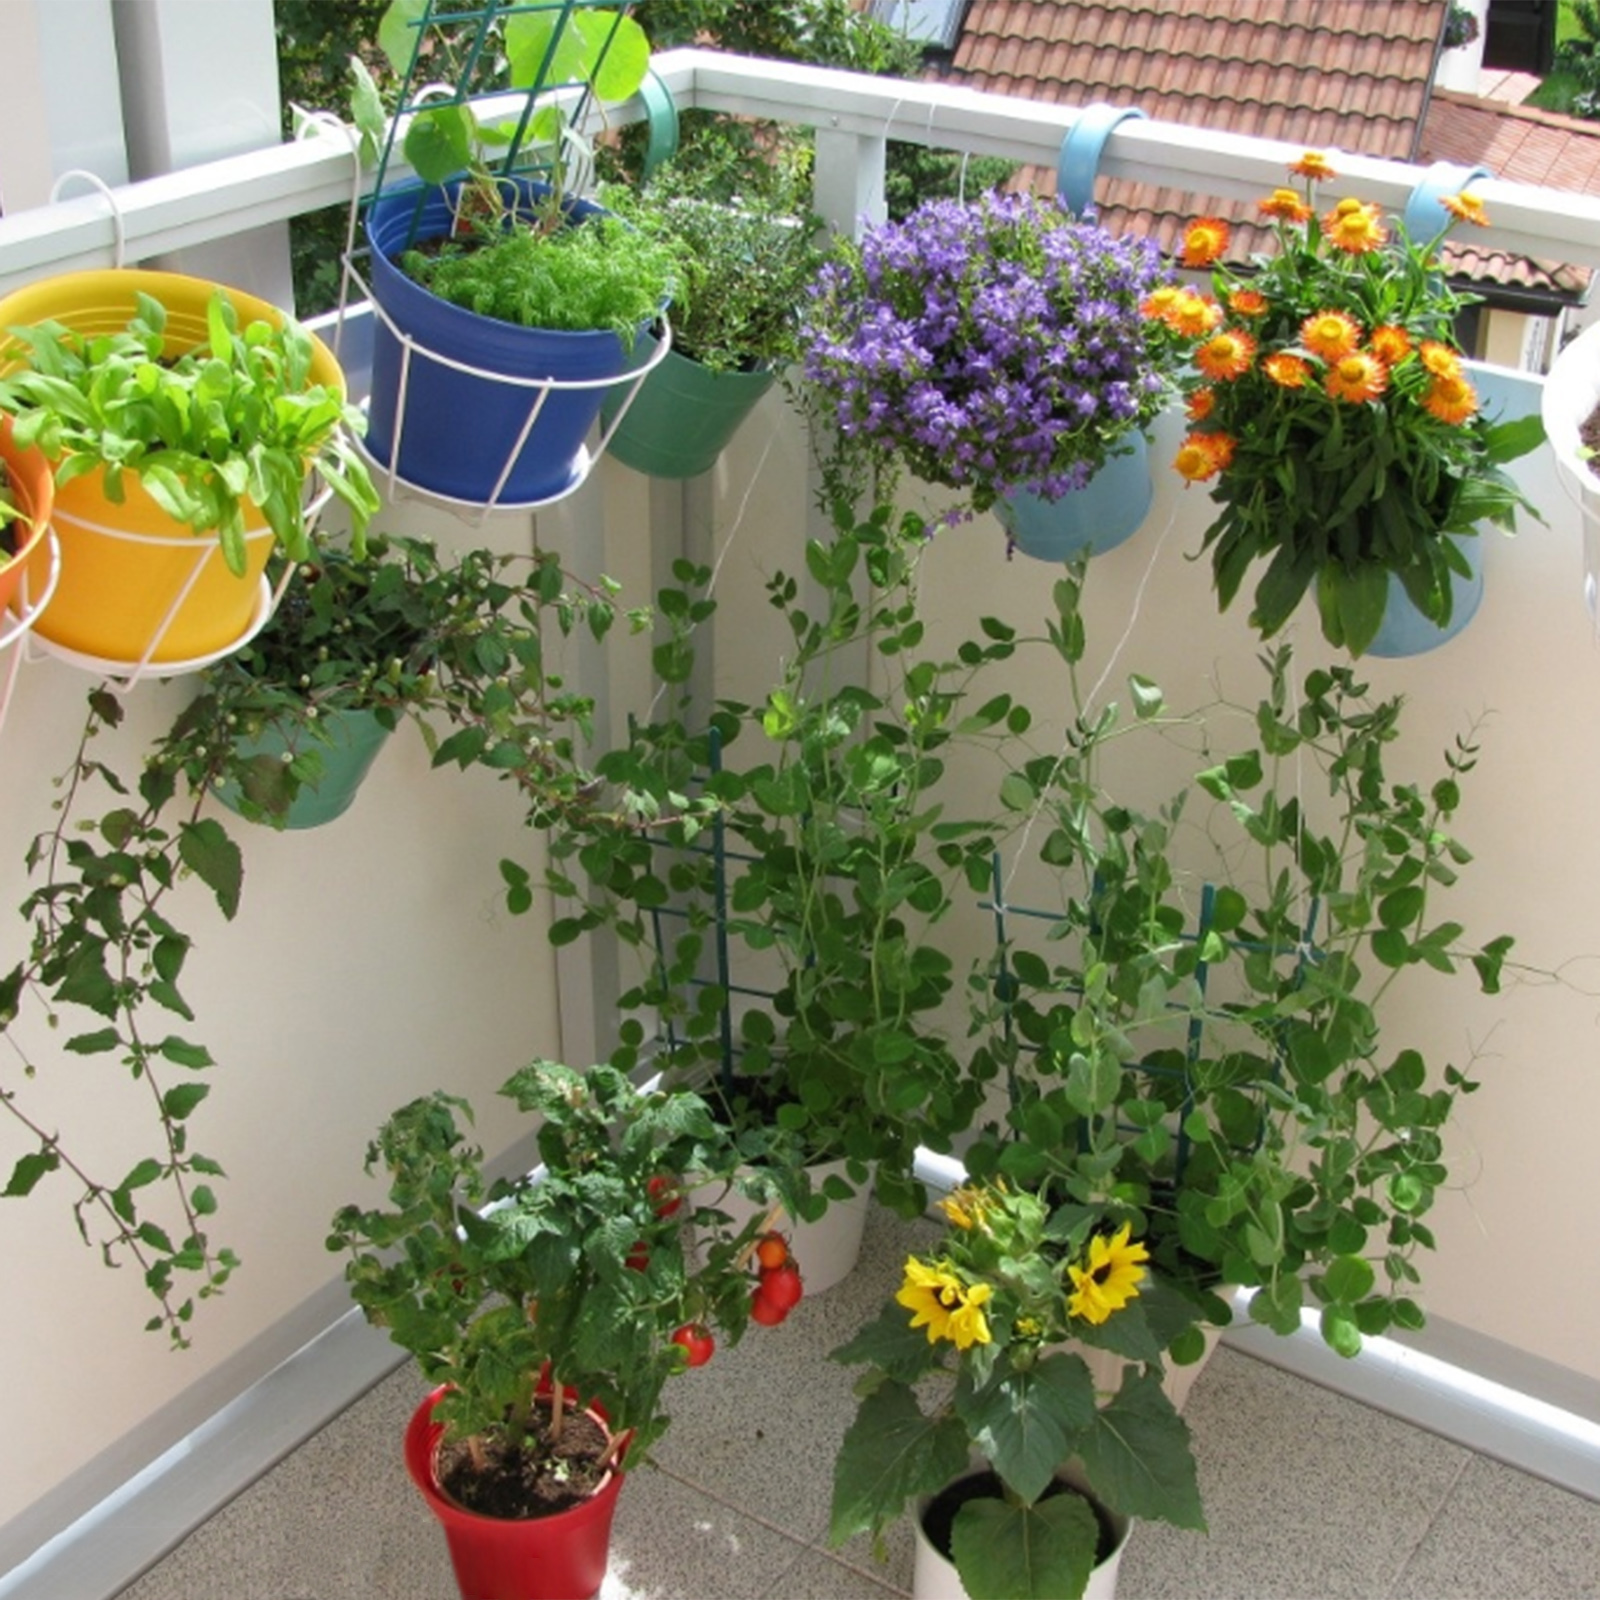 BToBackyard Hanging Flowerpot Bracket Balcony Plant Shelf Metal Garden Tool With Hook Iron Art Indoor Outdoor Planter Pot Holder - image 3 of 9